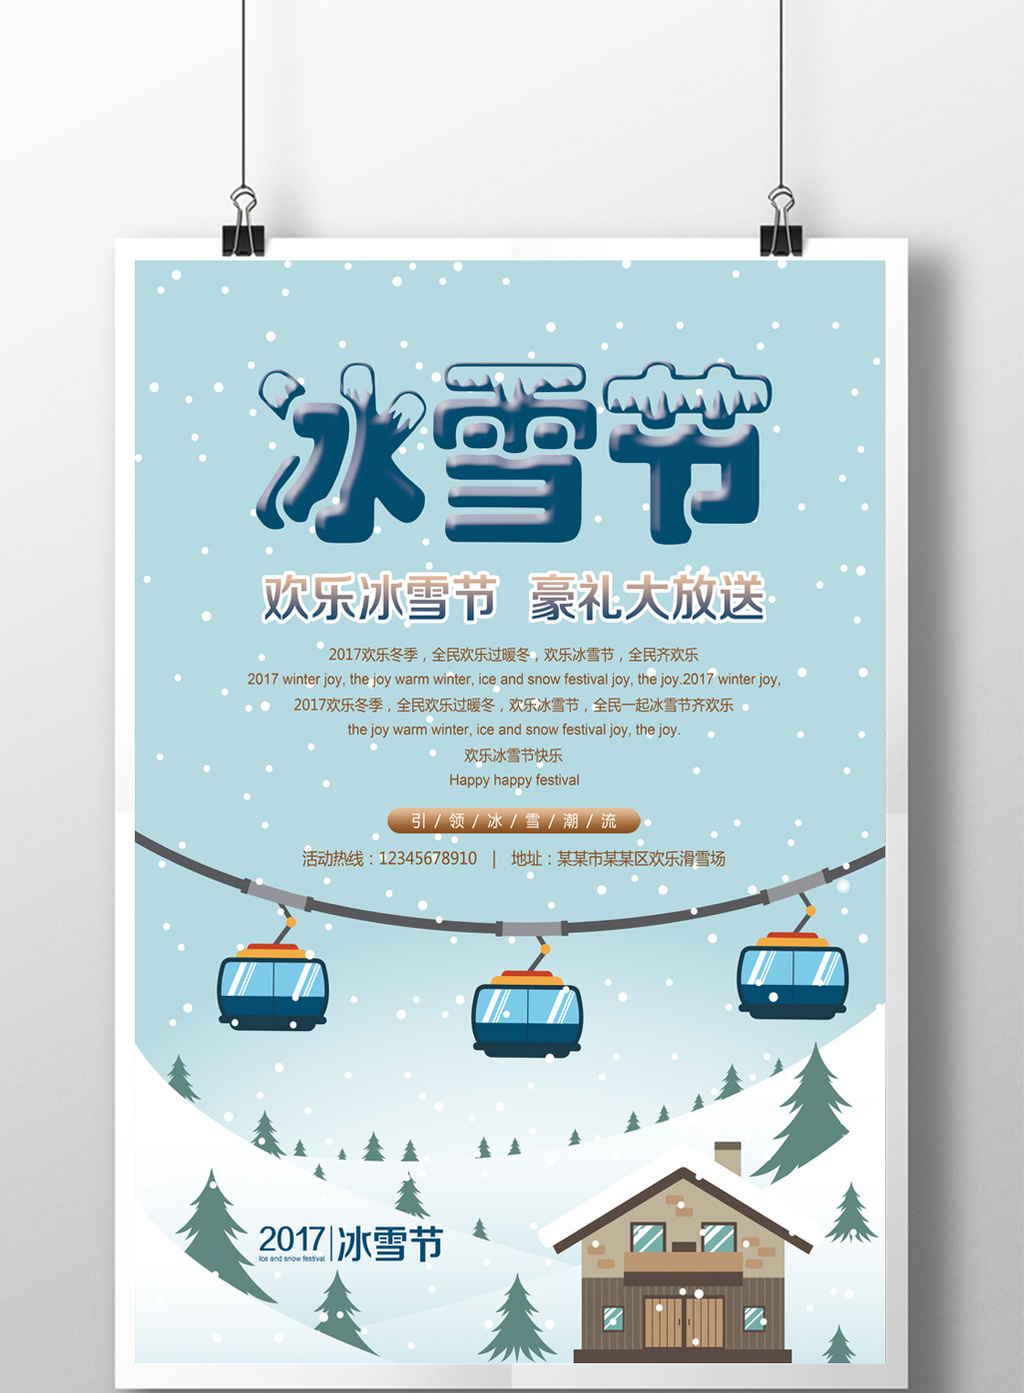 冰雪节活动促销宣传海报设计素材免费下载,本次作品主题是广告设计图片